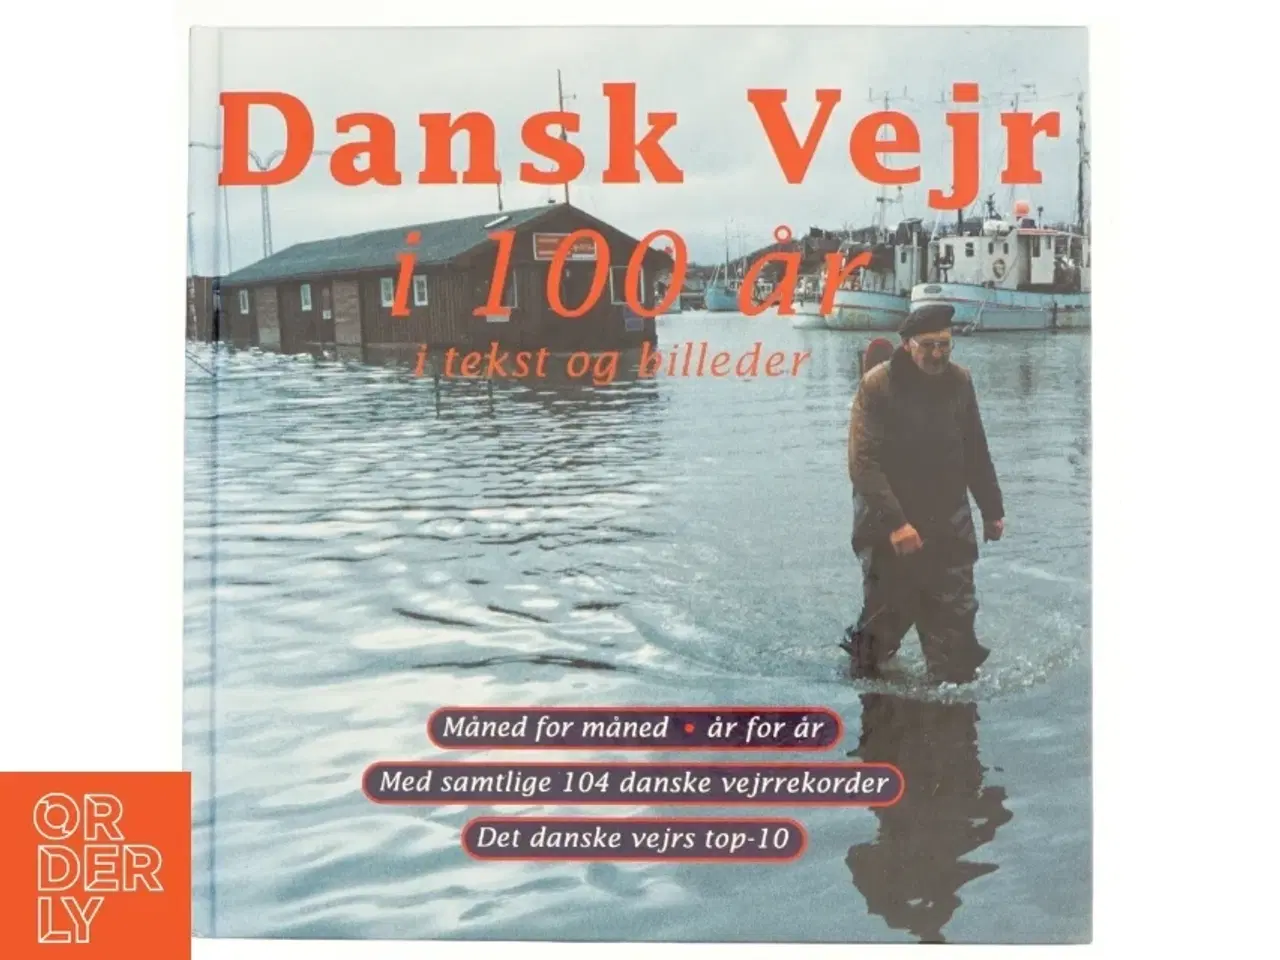 Billede 1 - Dansk vejr i 100 år i tekst og billeder (Bog)